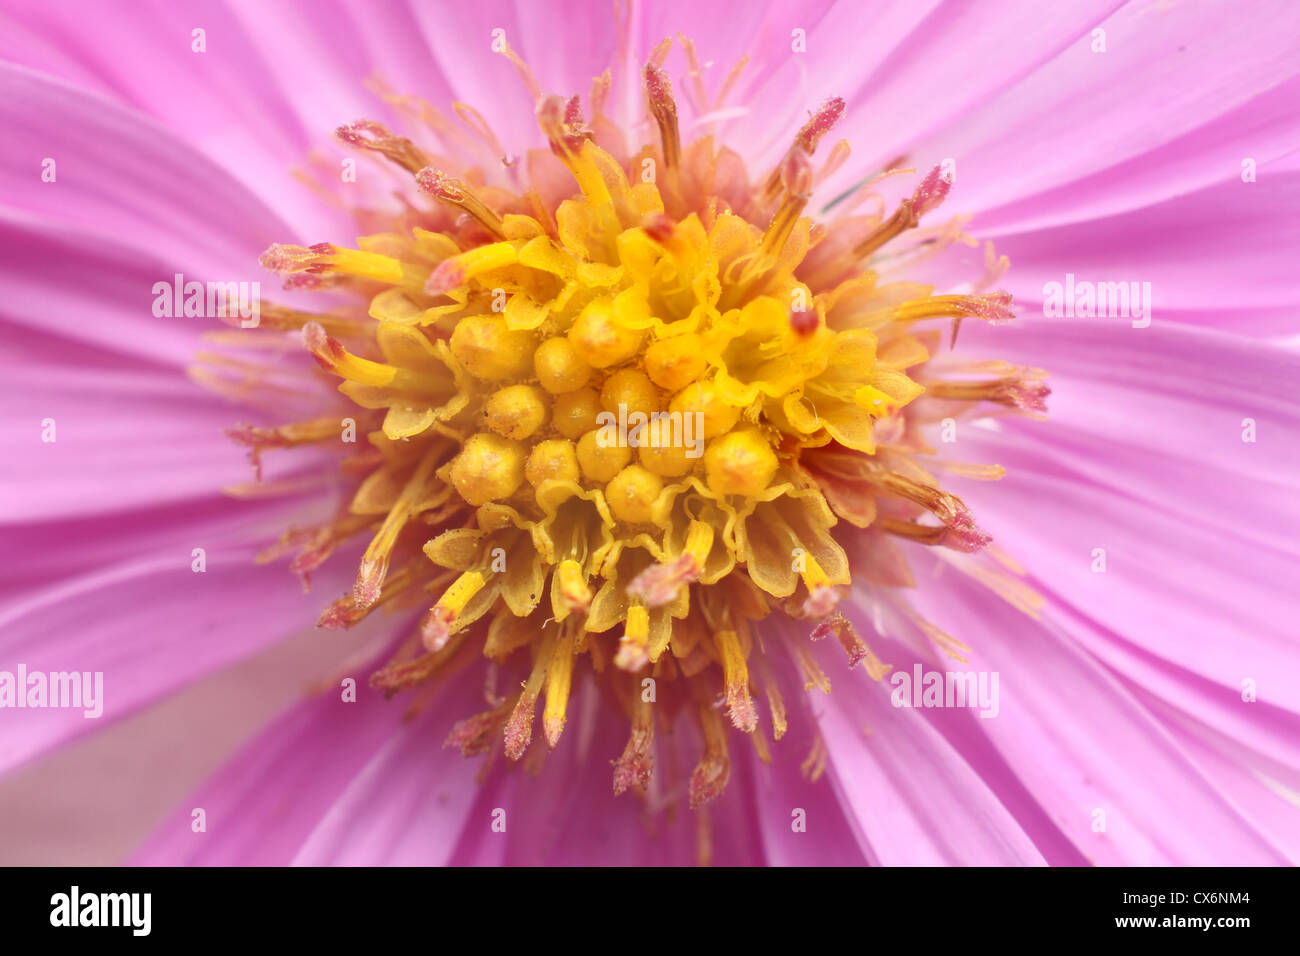 Foto del centro de un amarillo y rosa flor Margarita aster Foto de stock